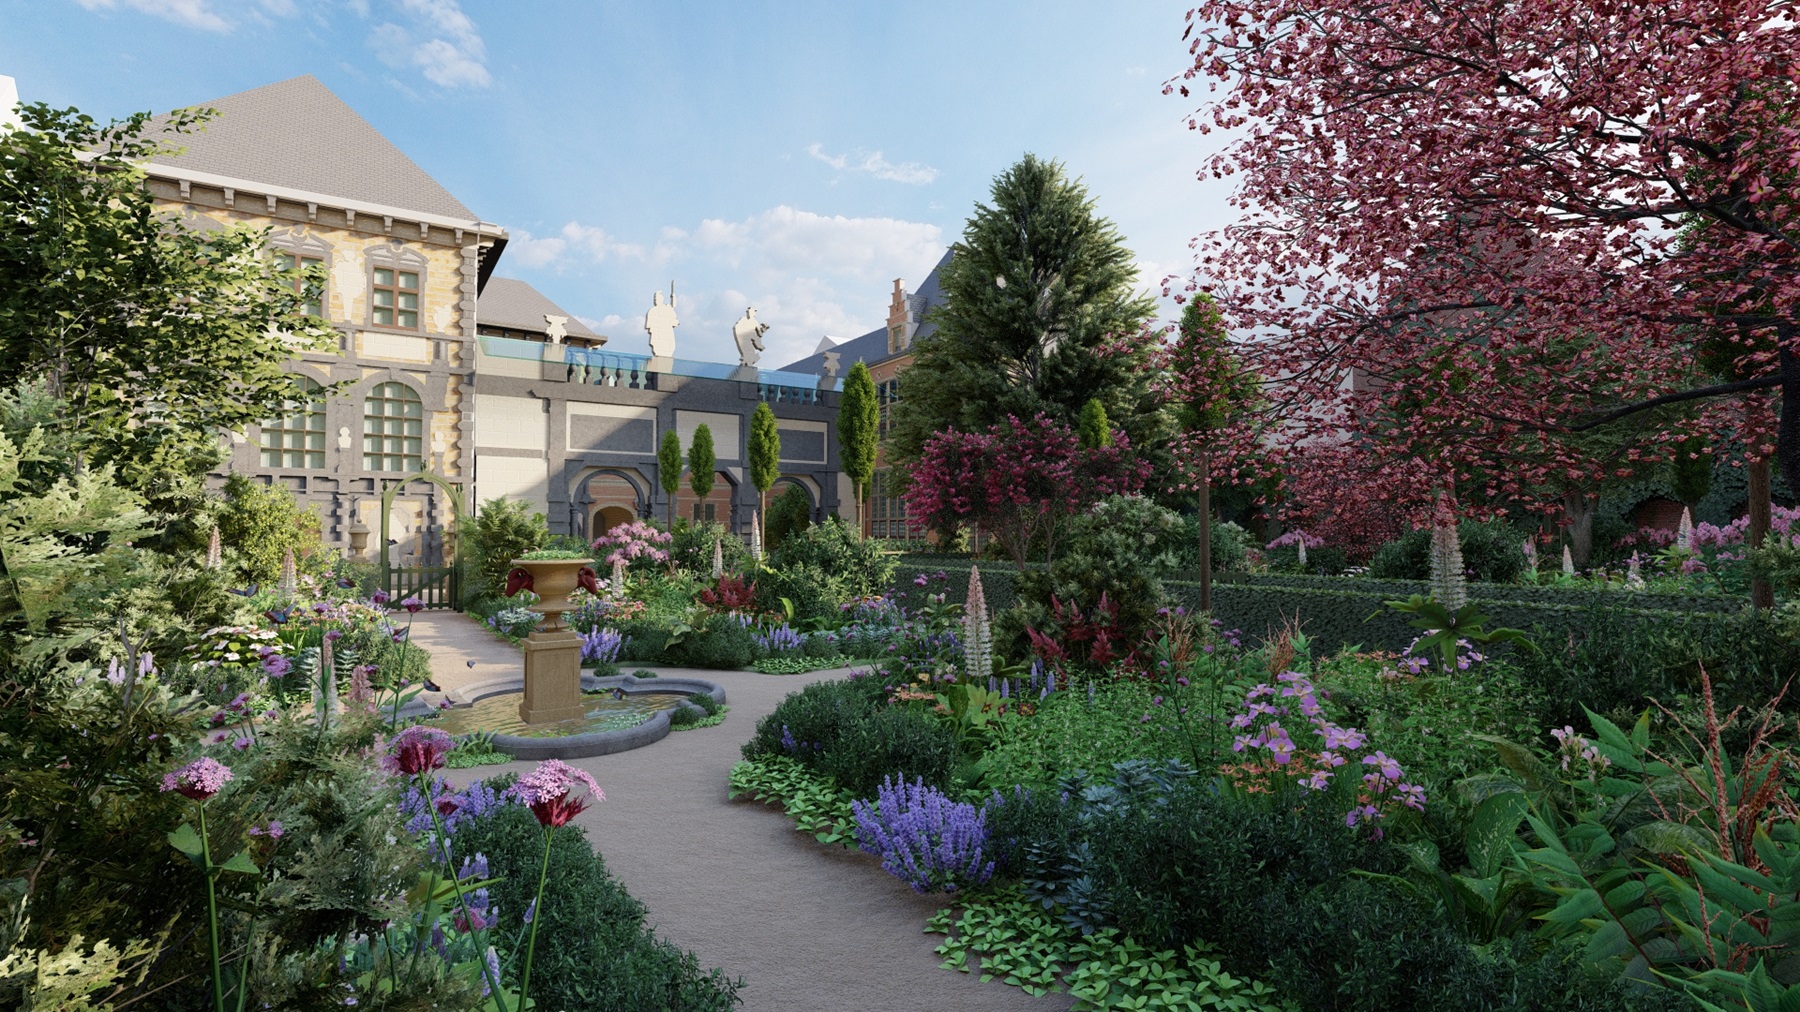 Rubens House: Accessing the garden